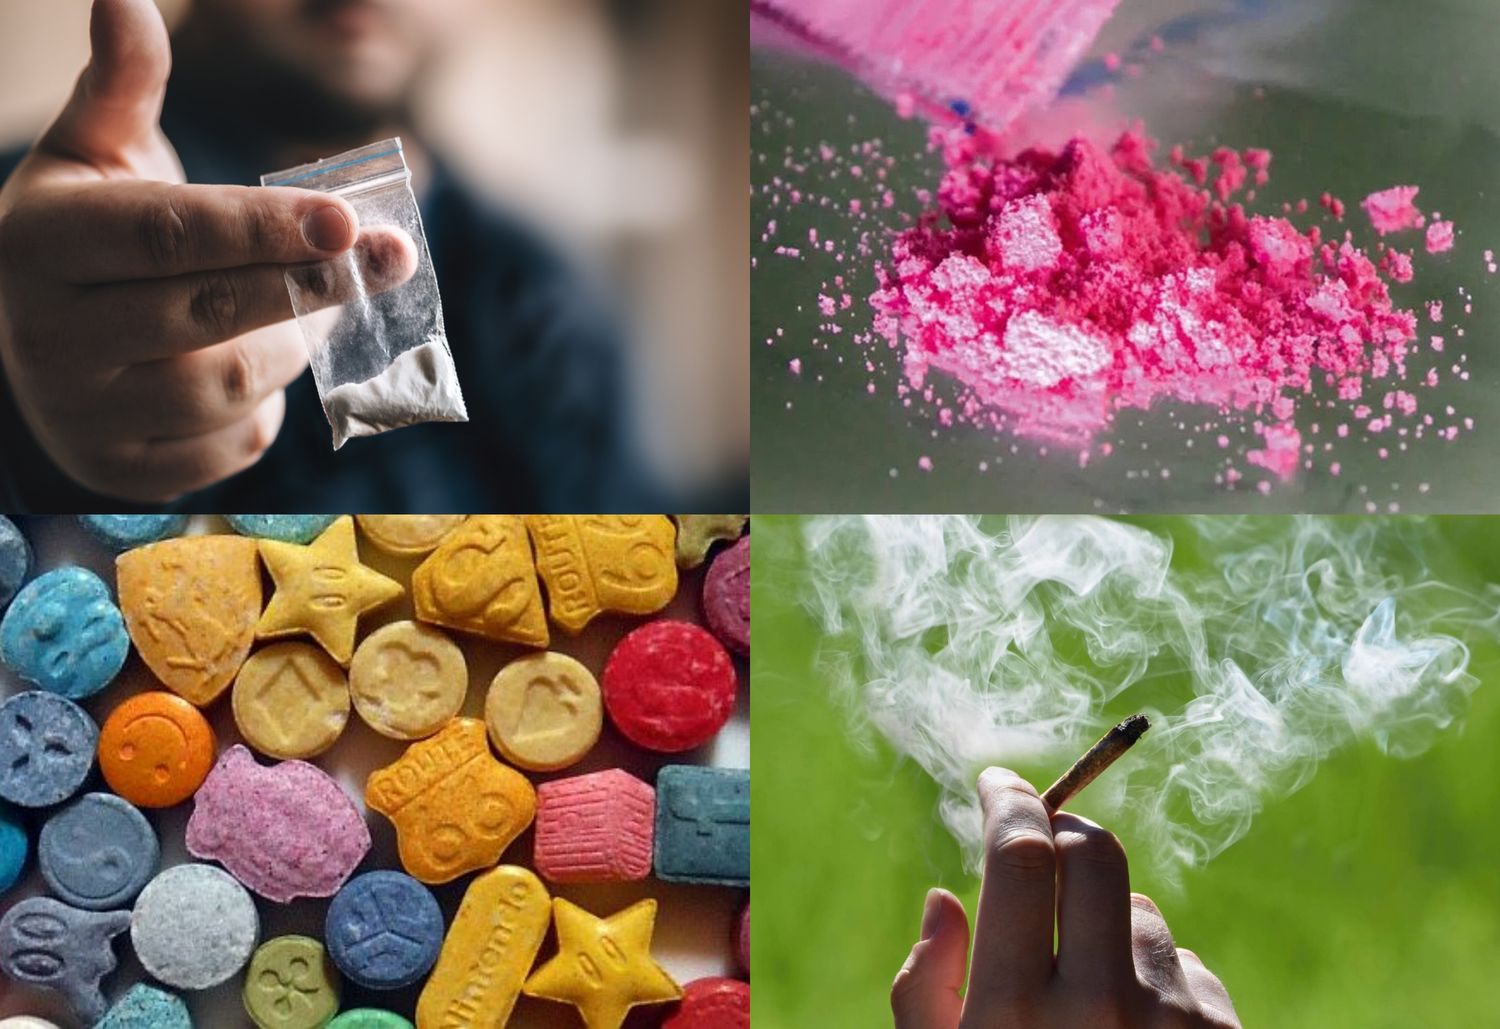 Favaro reconoció que las drogas que más circulan en la ciudad son el éxtasis y la cocaína rosa, por sobre las tradicionales, como cocaína y marihuana.